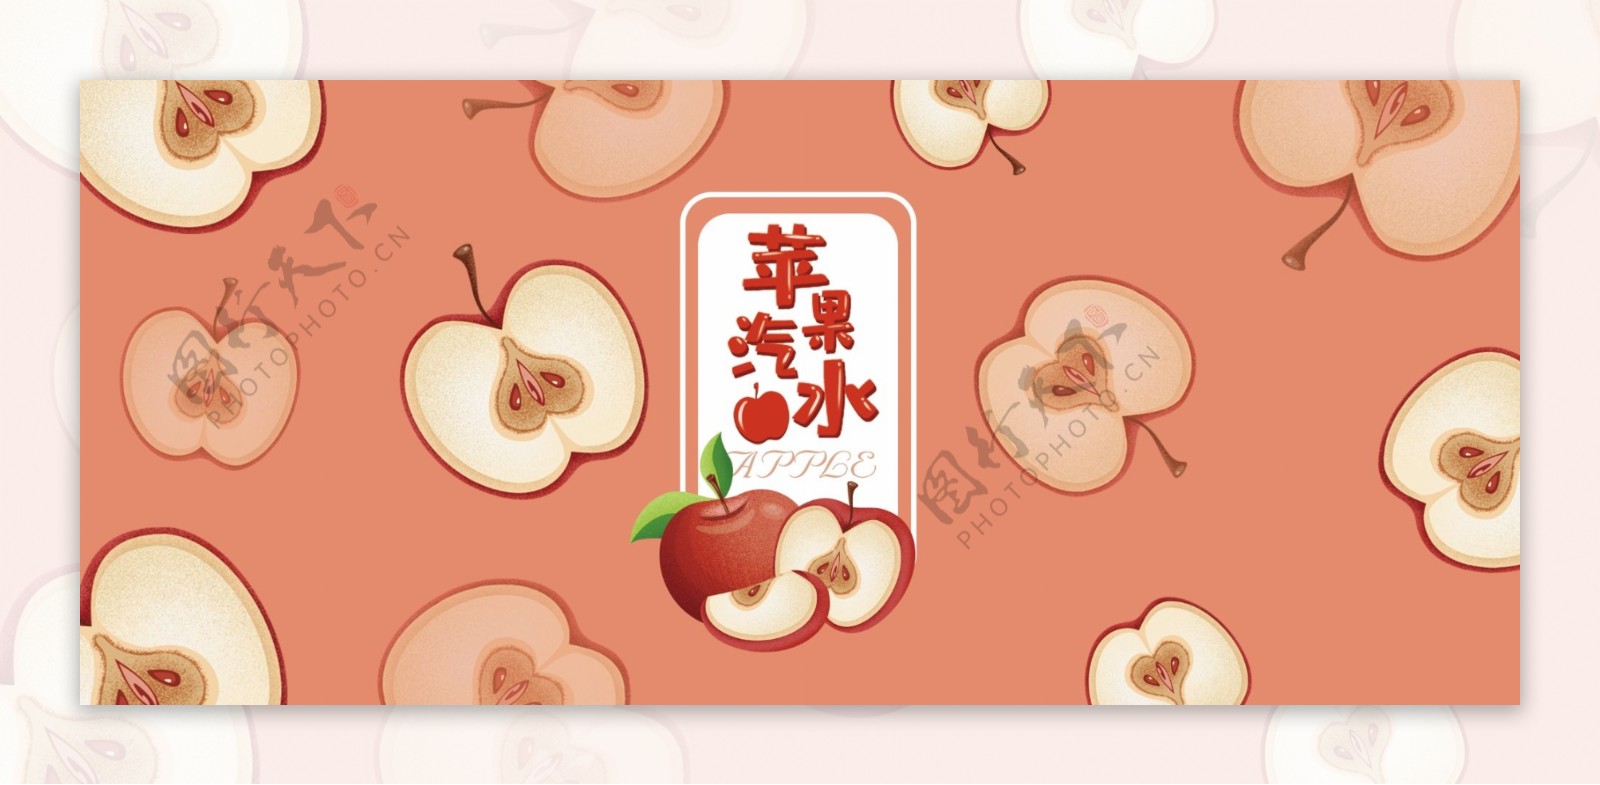 原创易拉罐包装七色水果苹果味汽水包装插画